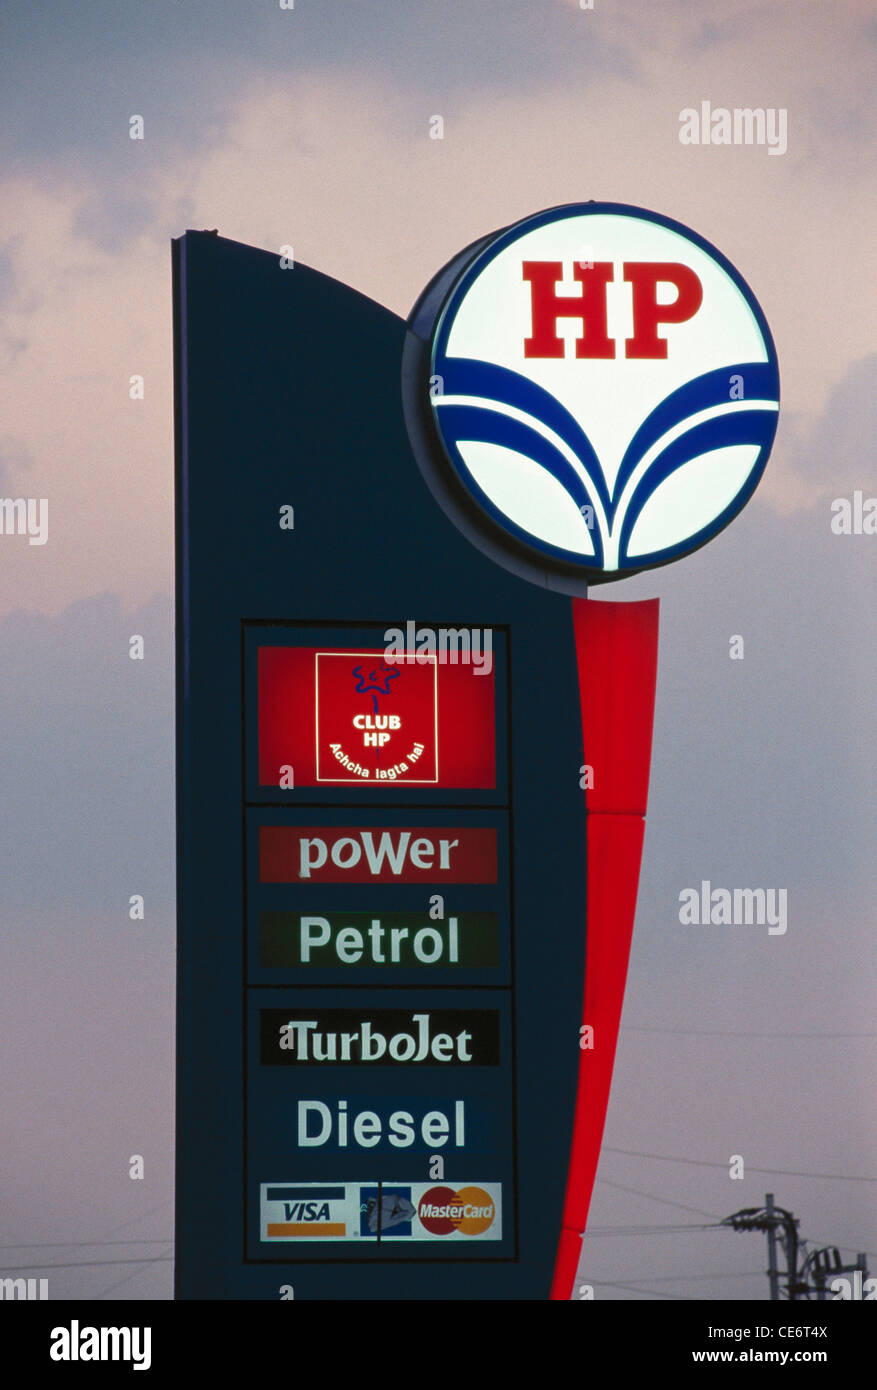 HP-Benzinpumpe Zeichen; Power-Benzin-Turbojet-Diesel auf bombay pune Express Autobahn; Maharashtra; Indien; asien Stockfoto